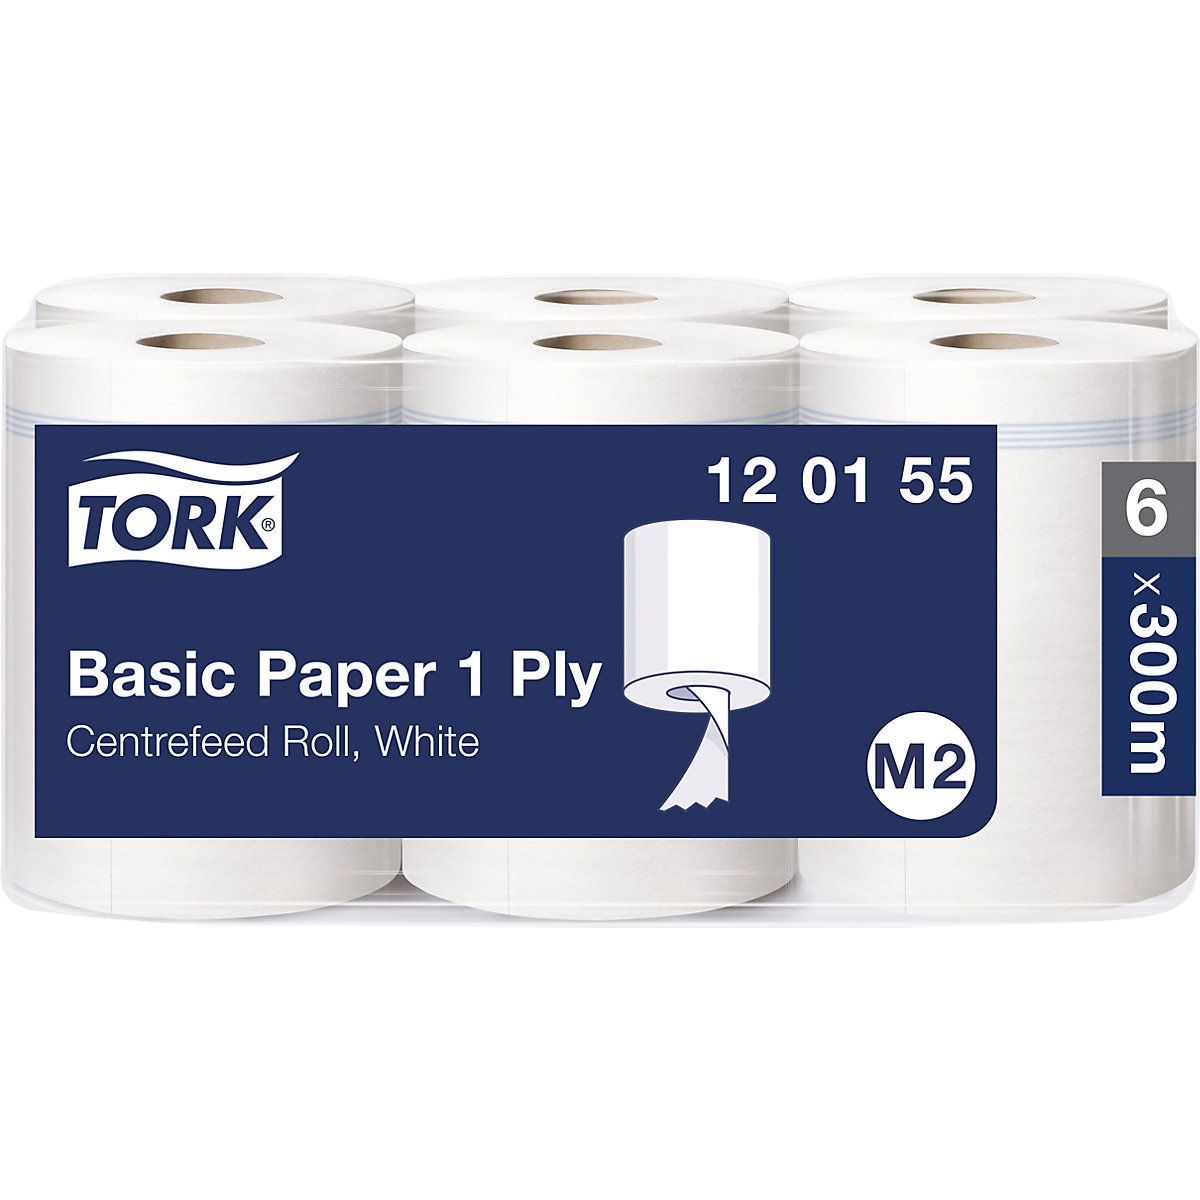 Standard papírtörlők, belül letekeredő – TORK